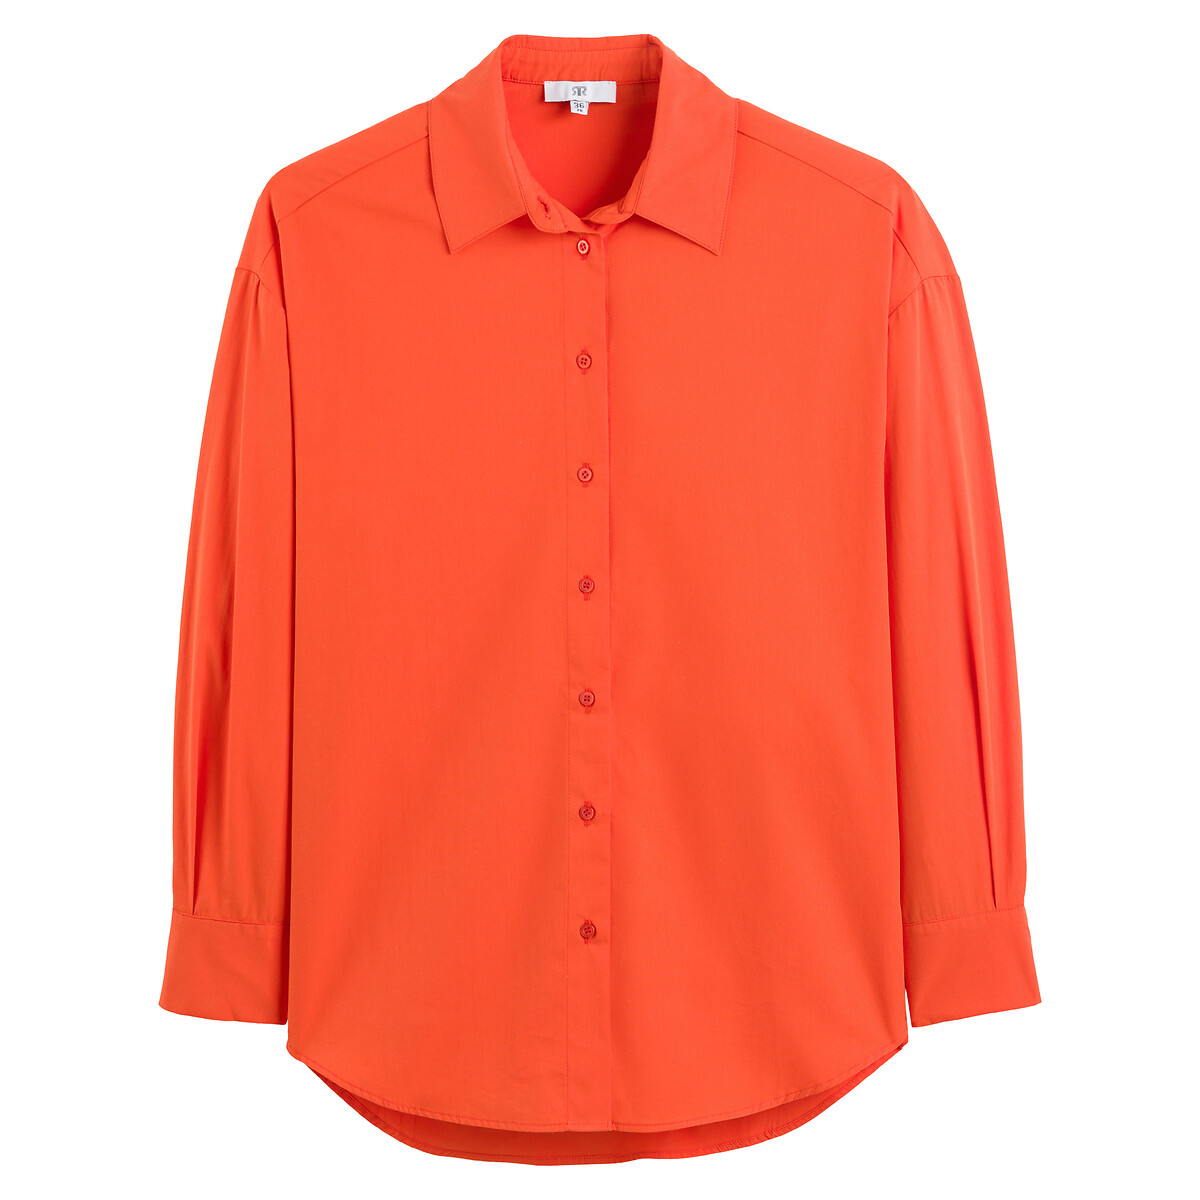 Рубашка Широкая с длинными рукавами 42 (FR) - 48 (RUS) оранжевый LaRedoute, размер 42 (FR) - 48 (RUS) Рубашка Широкая с длинными рукавами 42 (FR) - 48 (RUS) оранжевый - фото 5